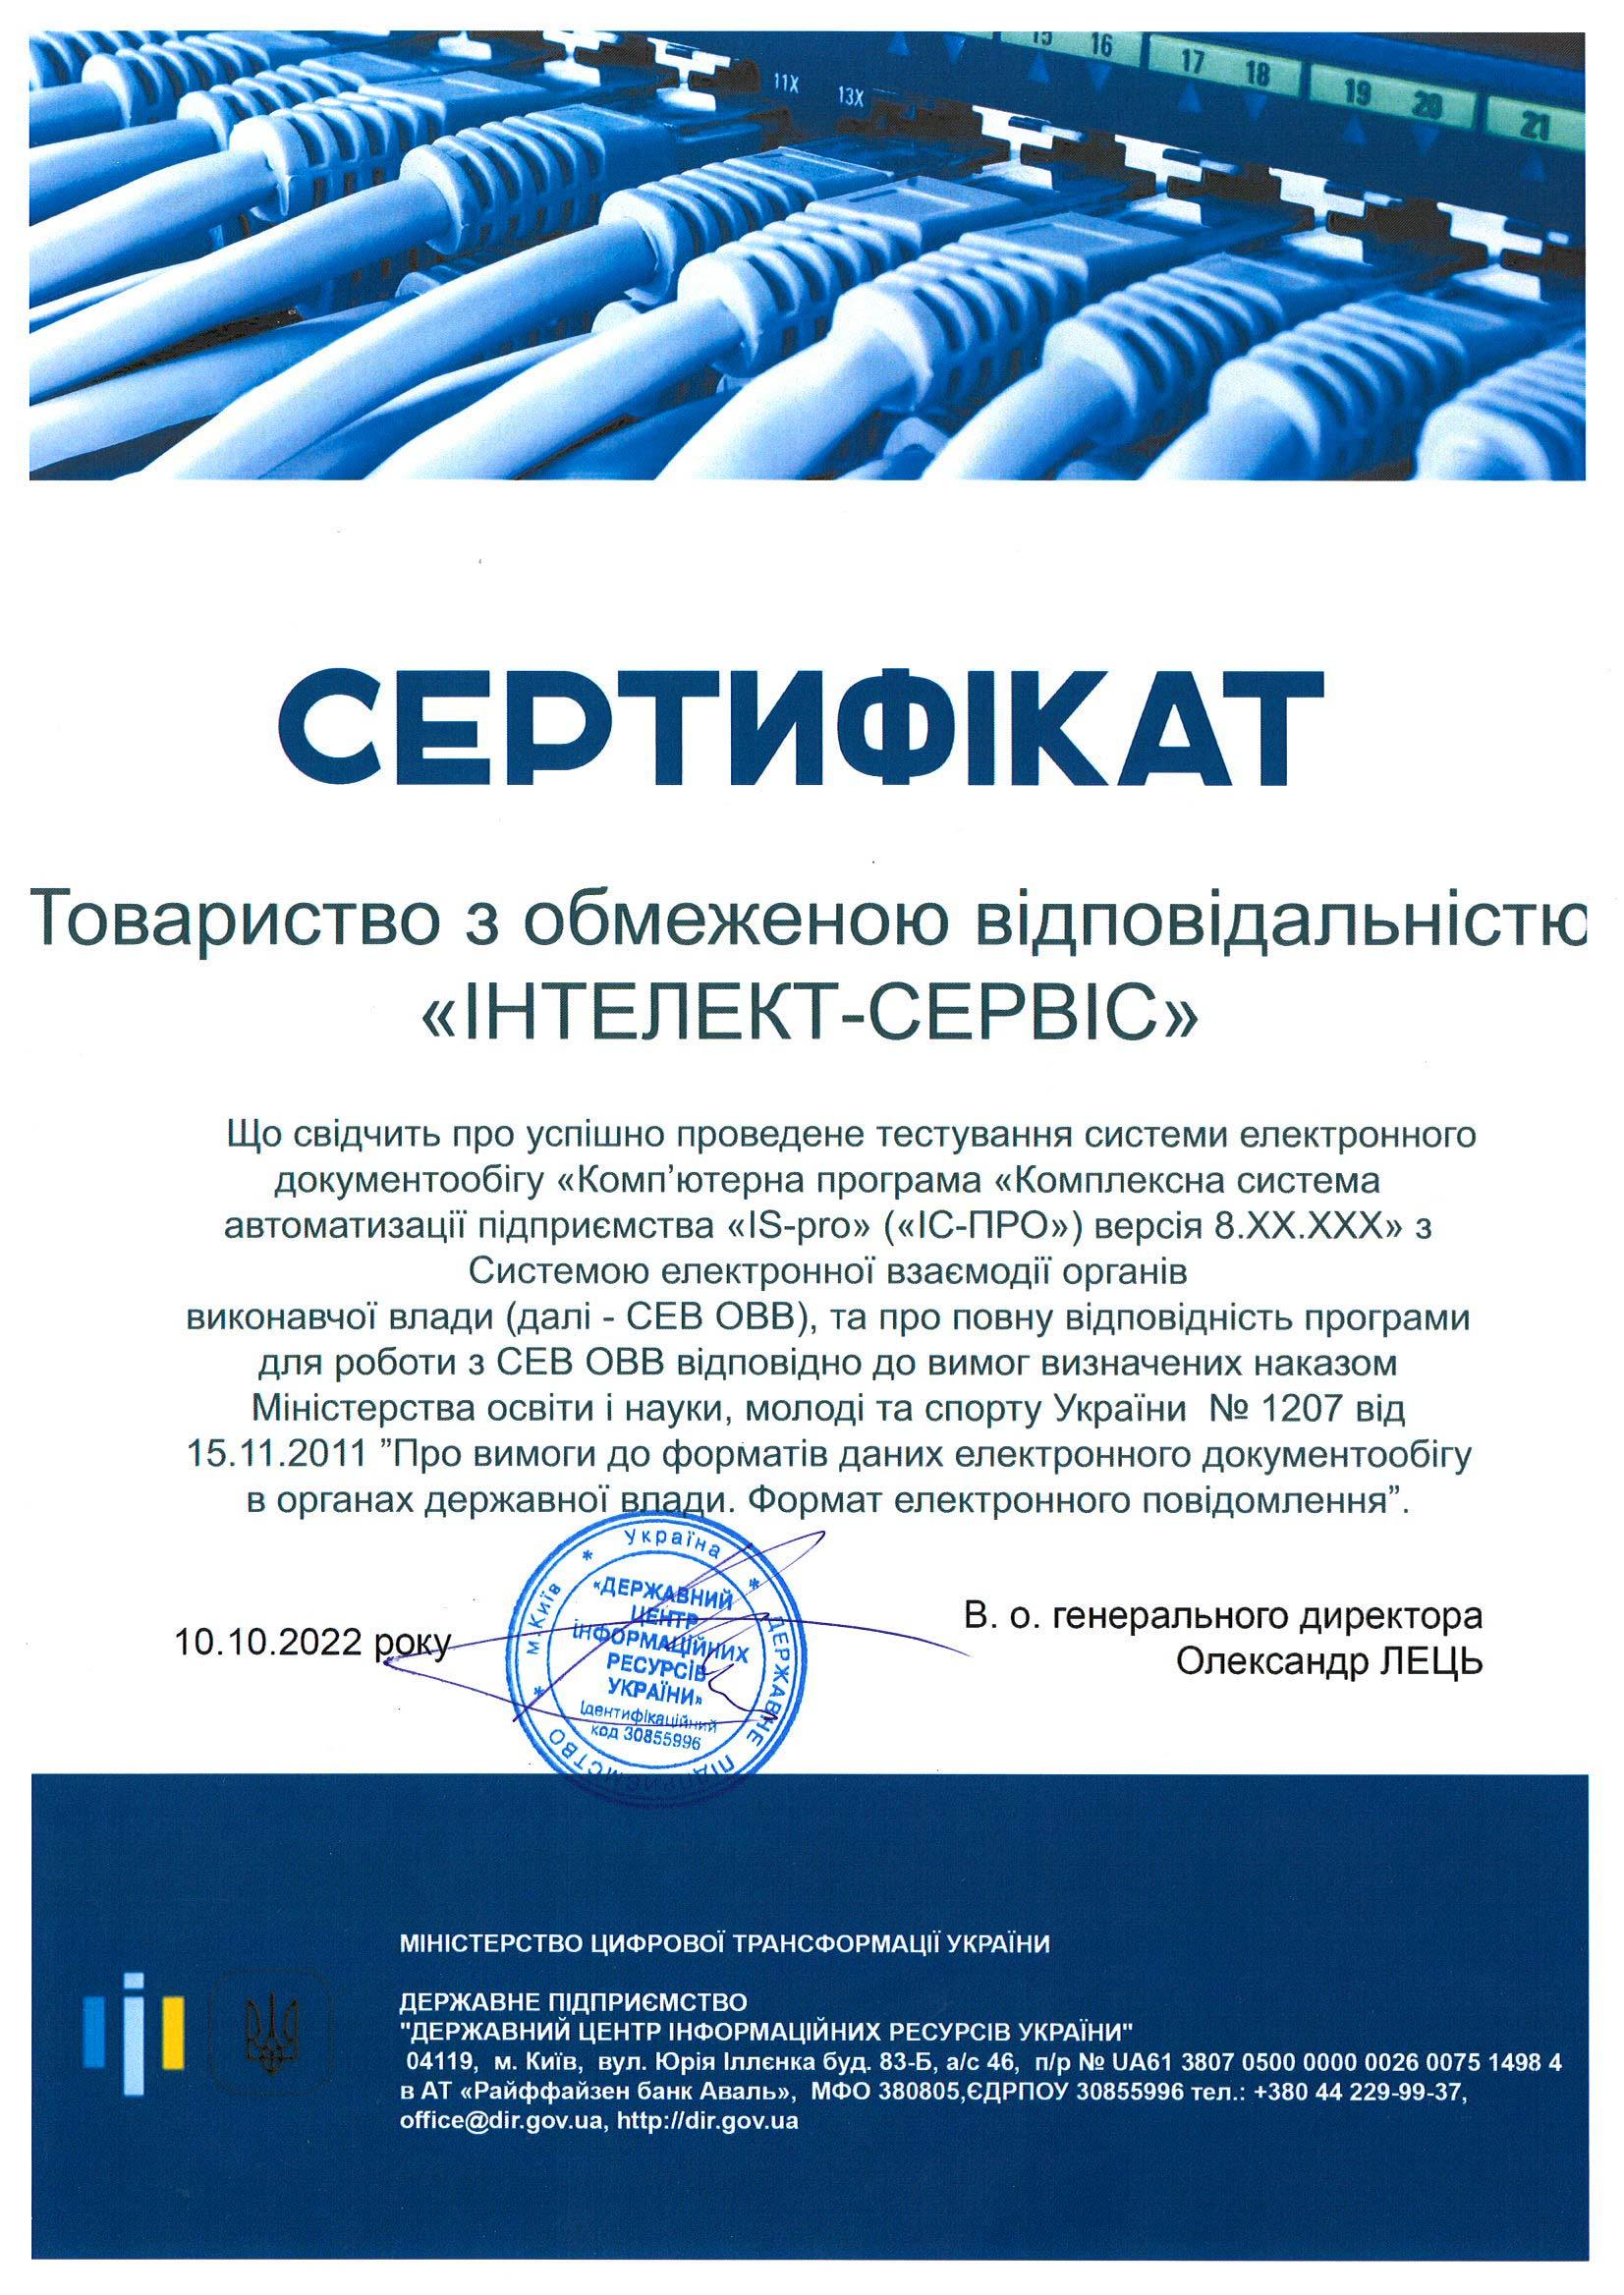 Сертифікат по інтеграції ISpro з СЕВ ОВВ